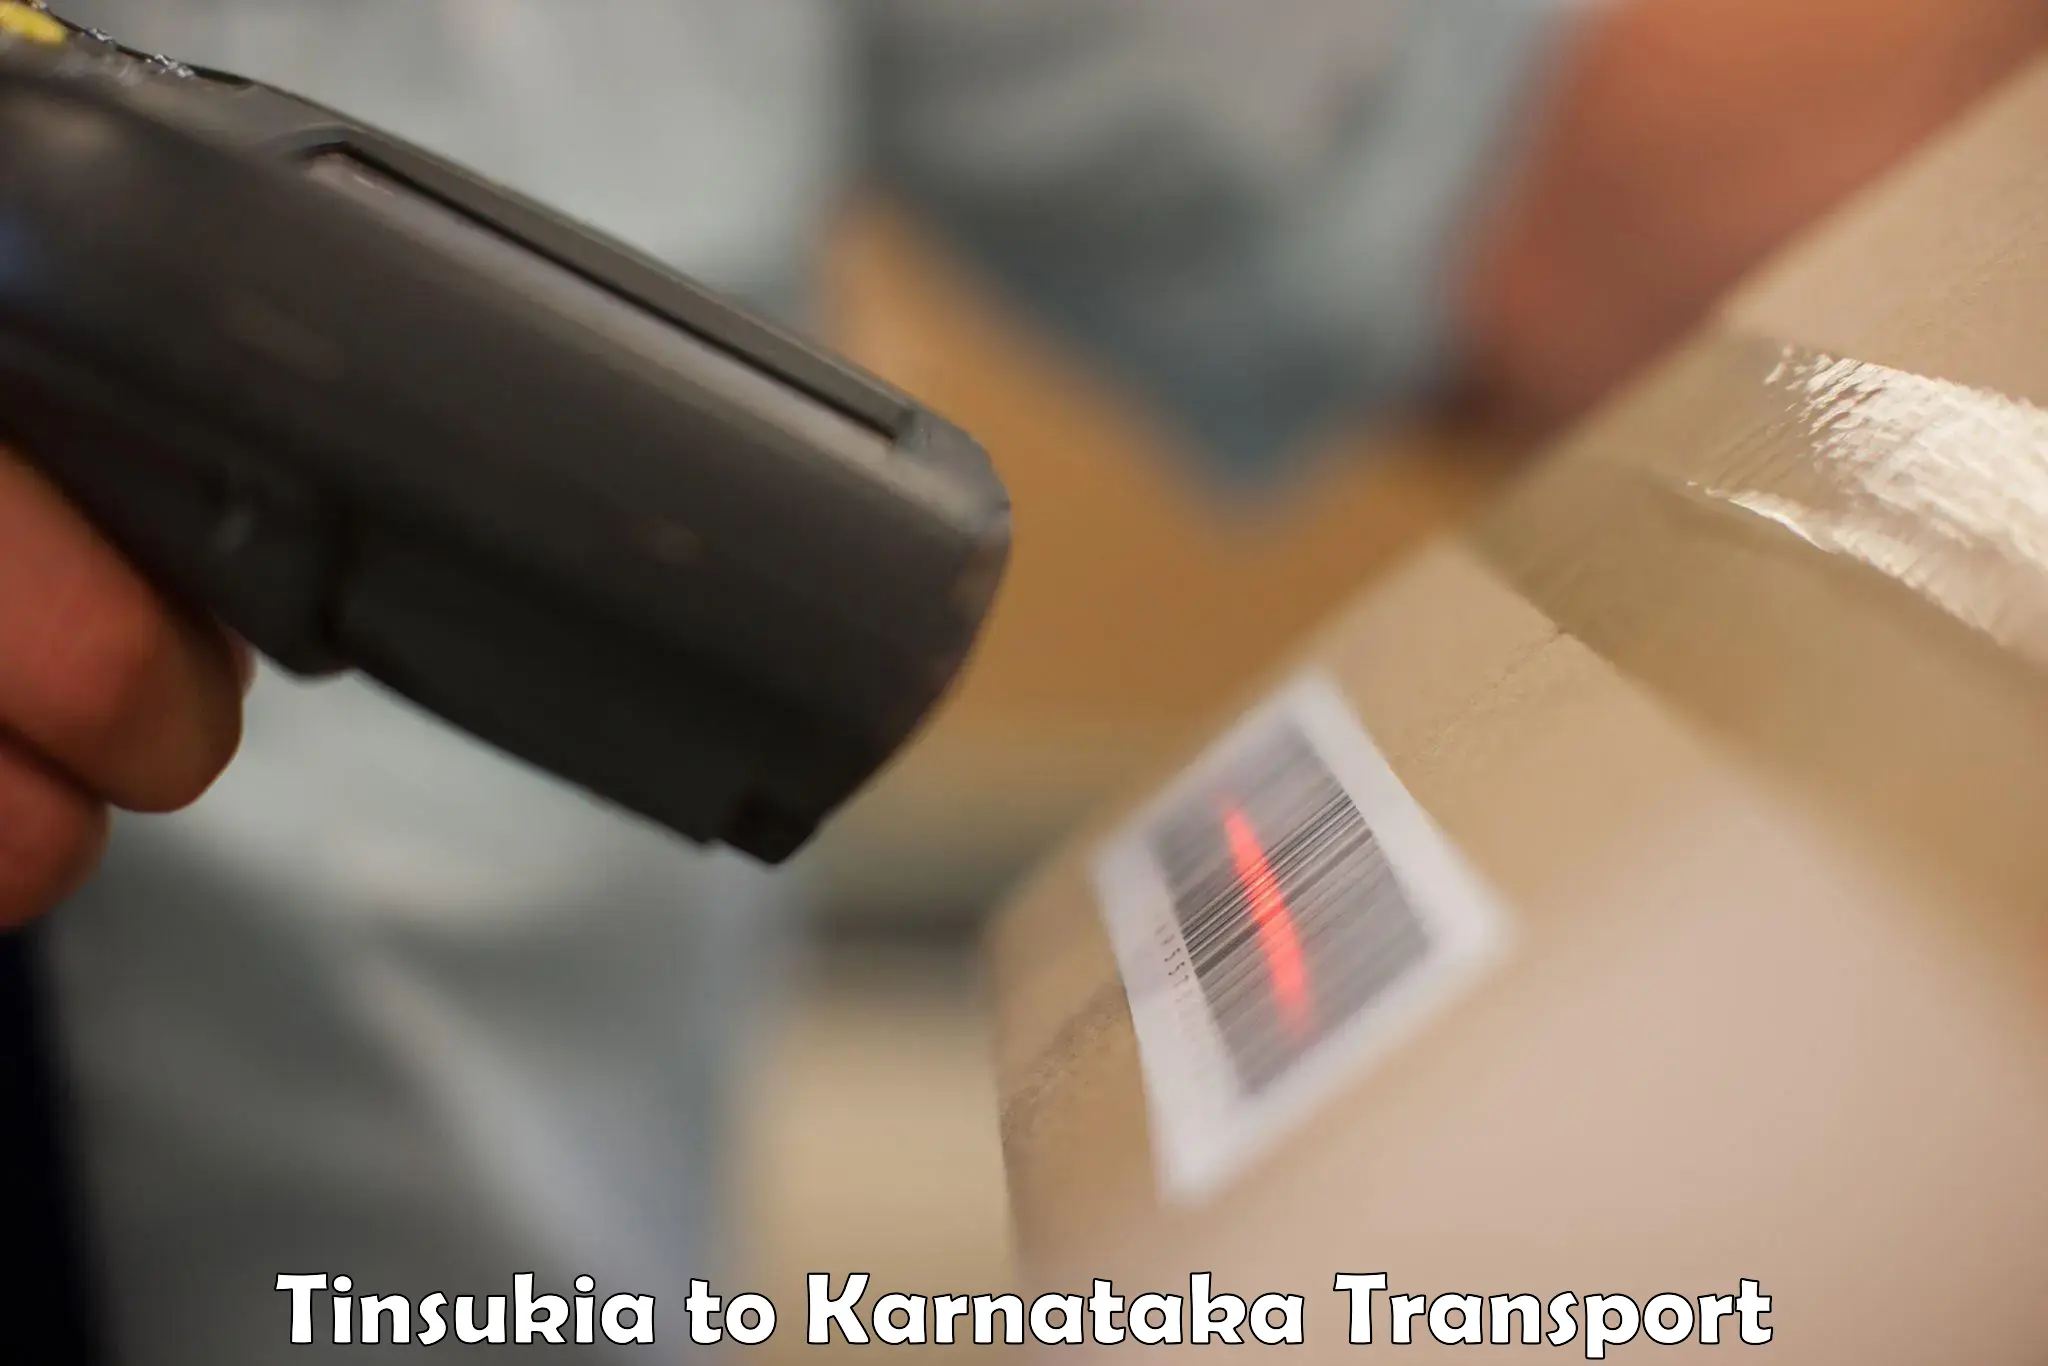 Daily transport service Tinsukia to Kittur